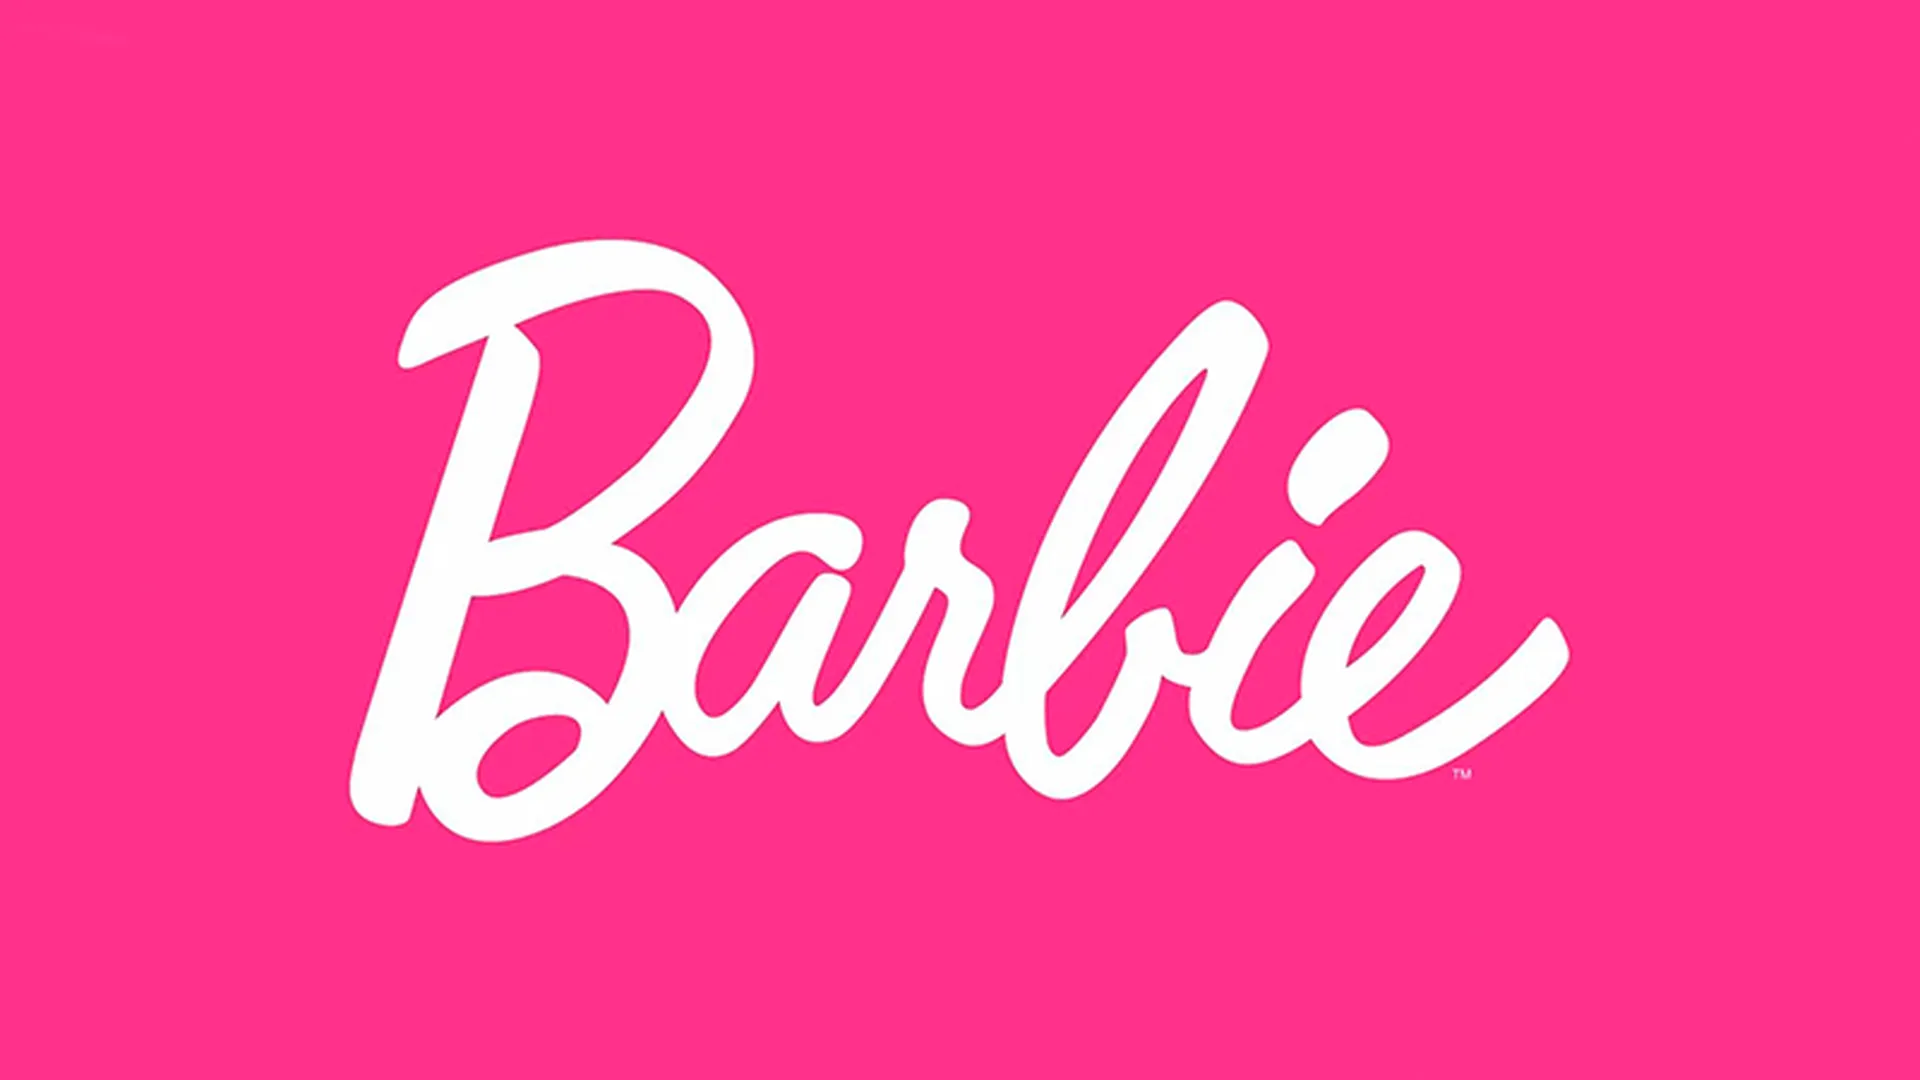 Barbie с прыщами и кривыми зубами могут появиться в продаже